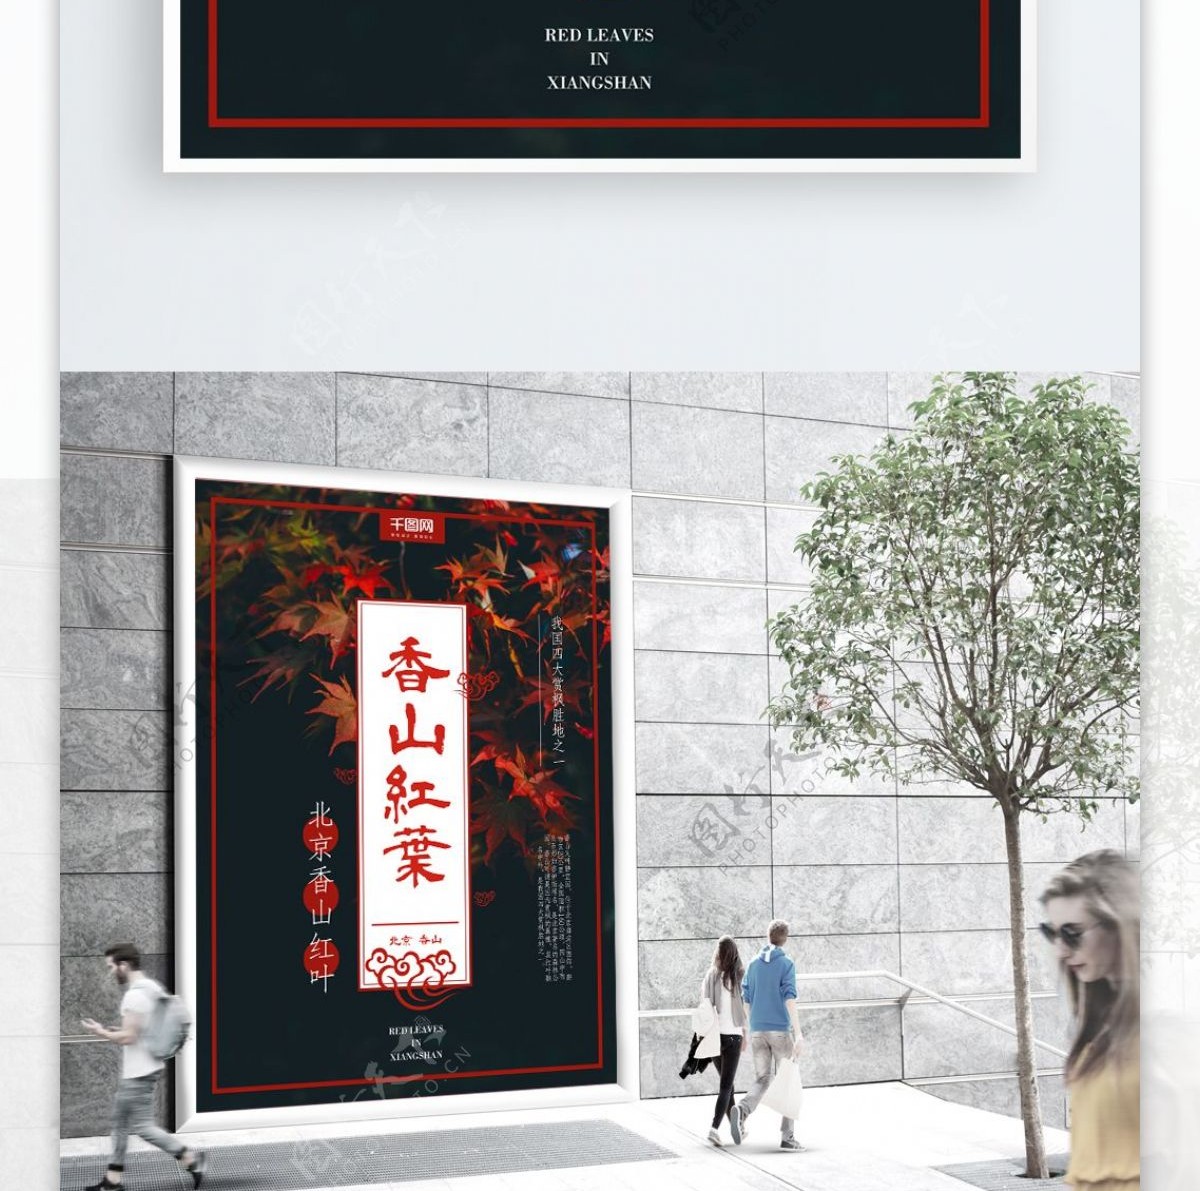 简约秋意北京香山枫叶旅游海报